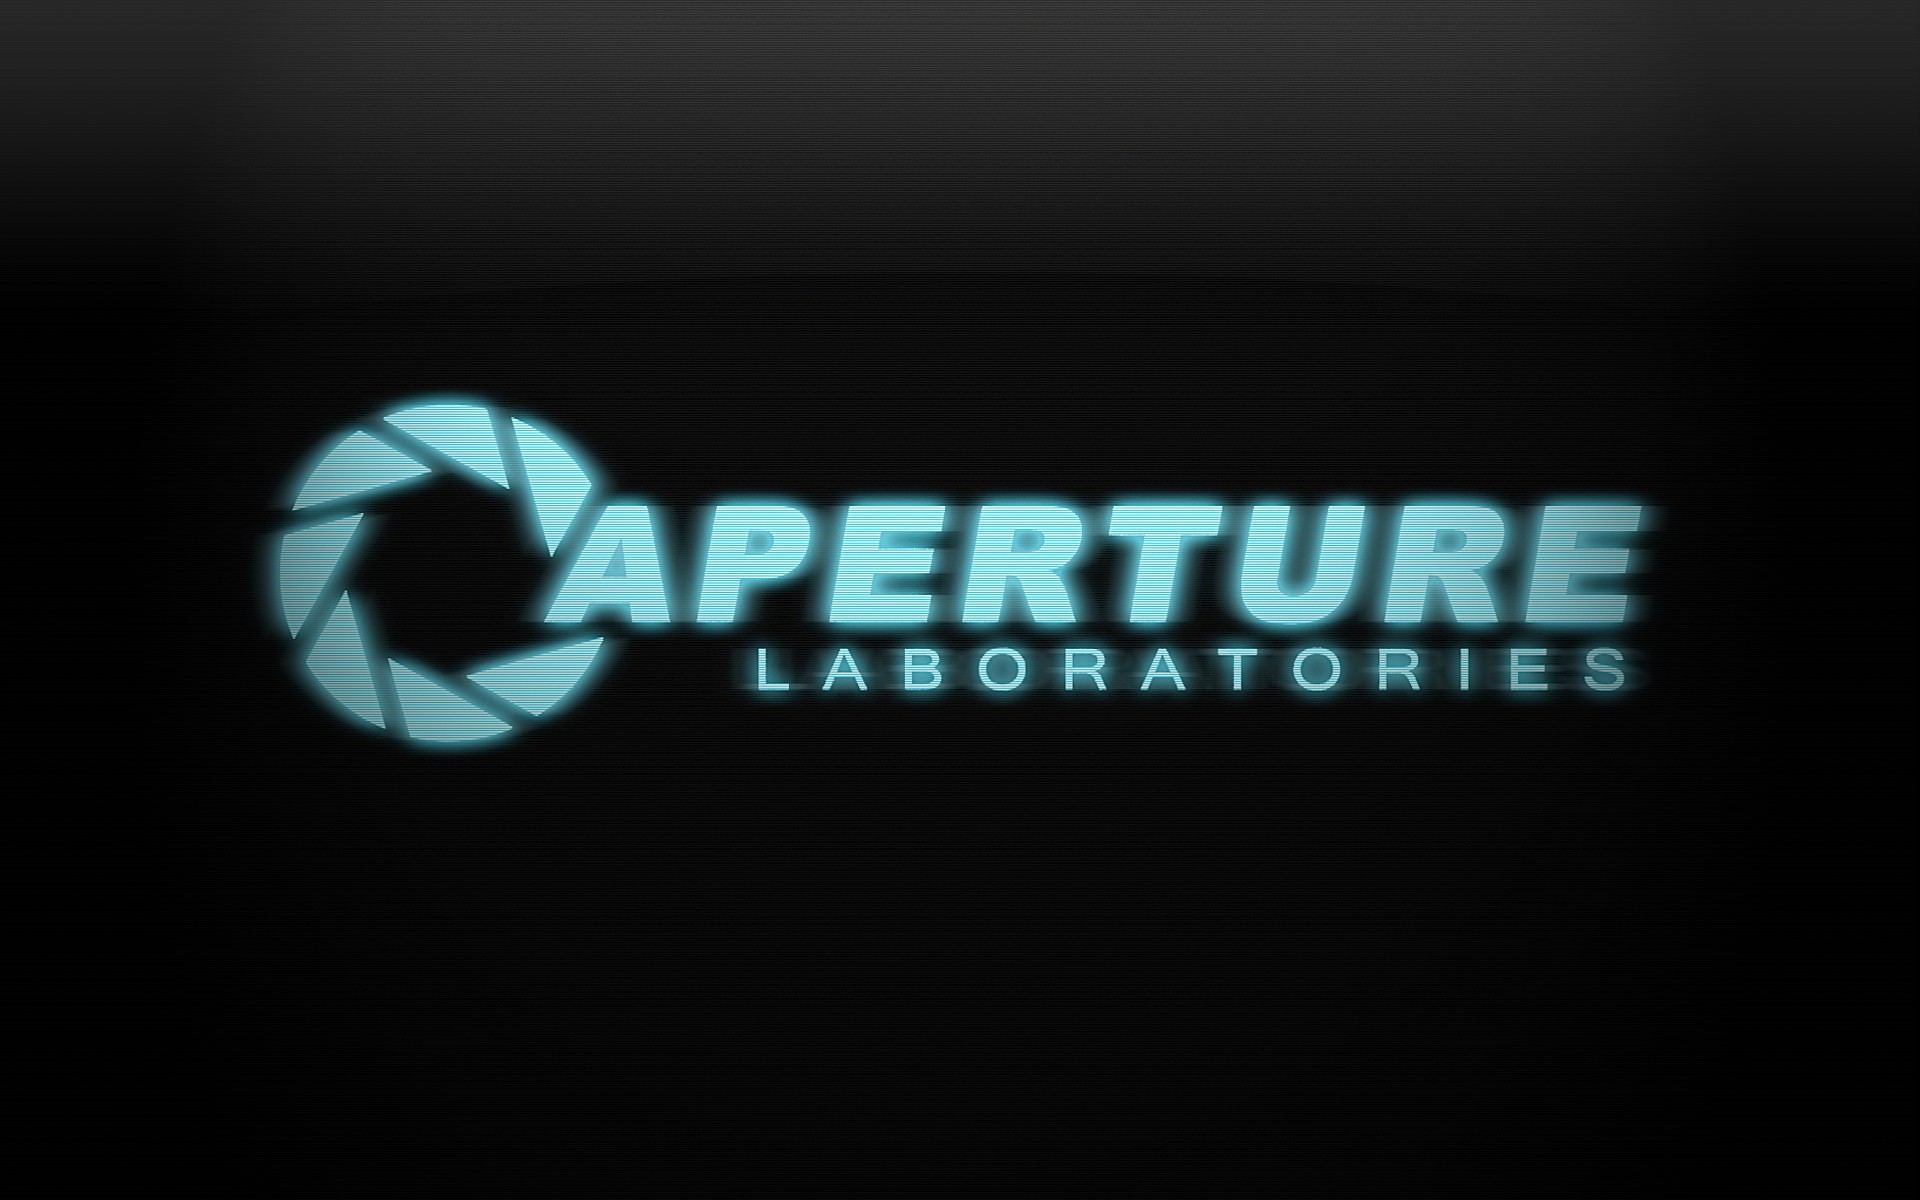 aperture, Laboratories, Logos Wallpaper